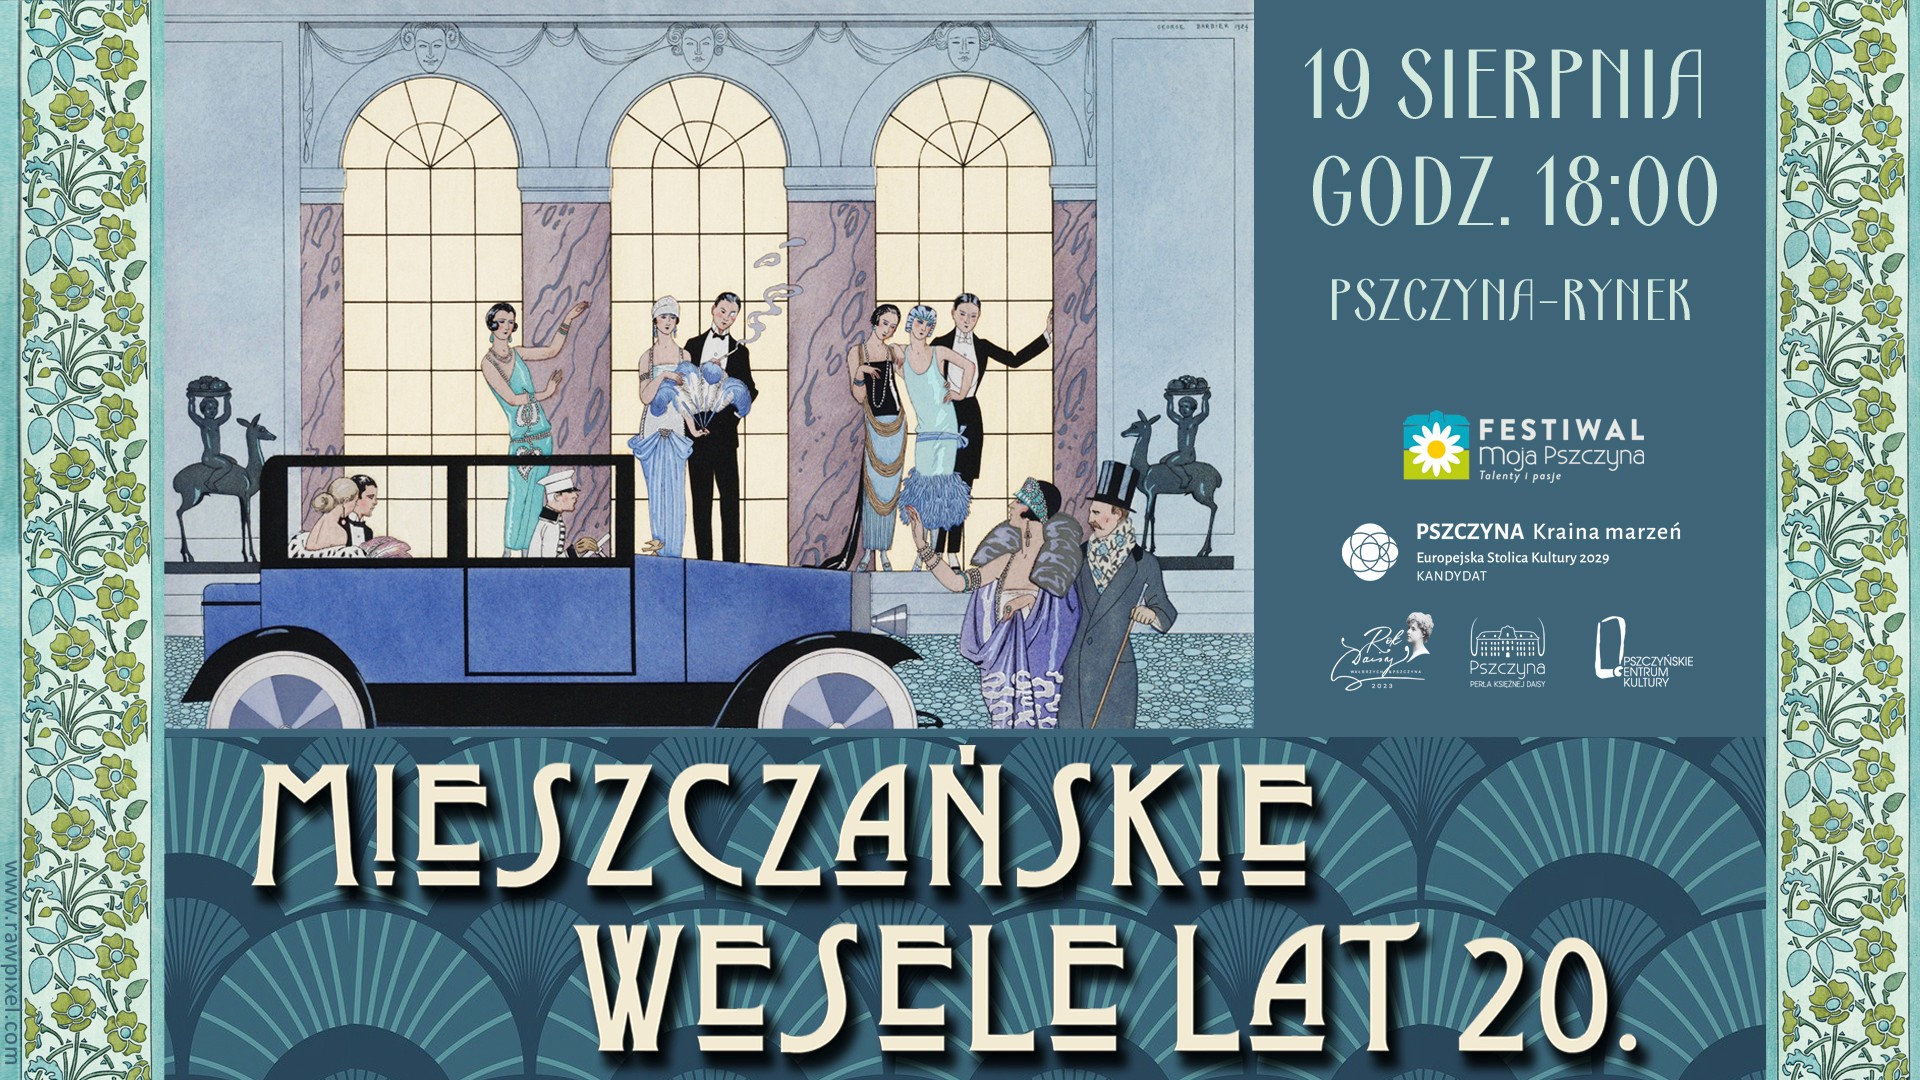 Mieszczańskie wesele lat 20. na rynku w Pszczynie